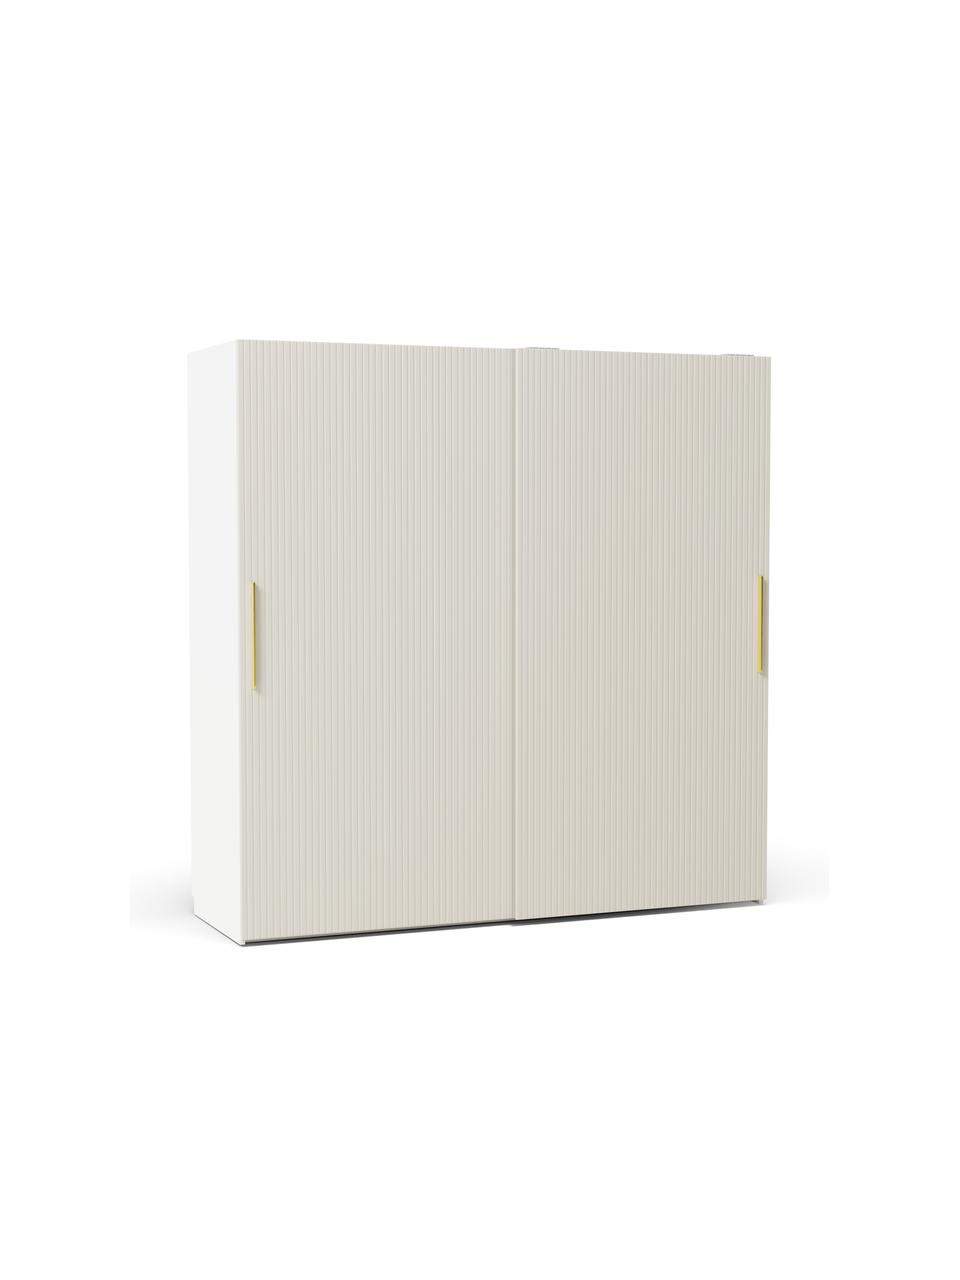 Modulární šatní skříň s posuvnými dveřmi Simone, šířka 200 cm, různé varianty, Dřevo, béžová, Interiér Basic, V 200 cm